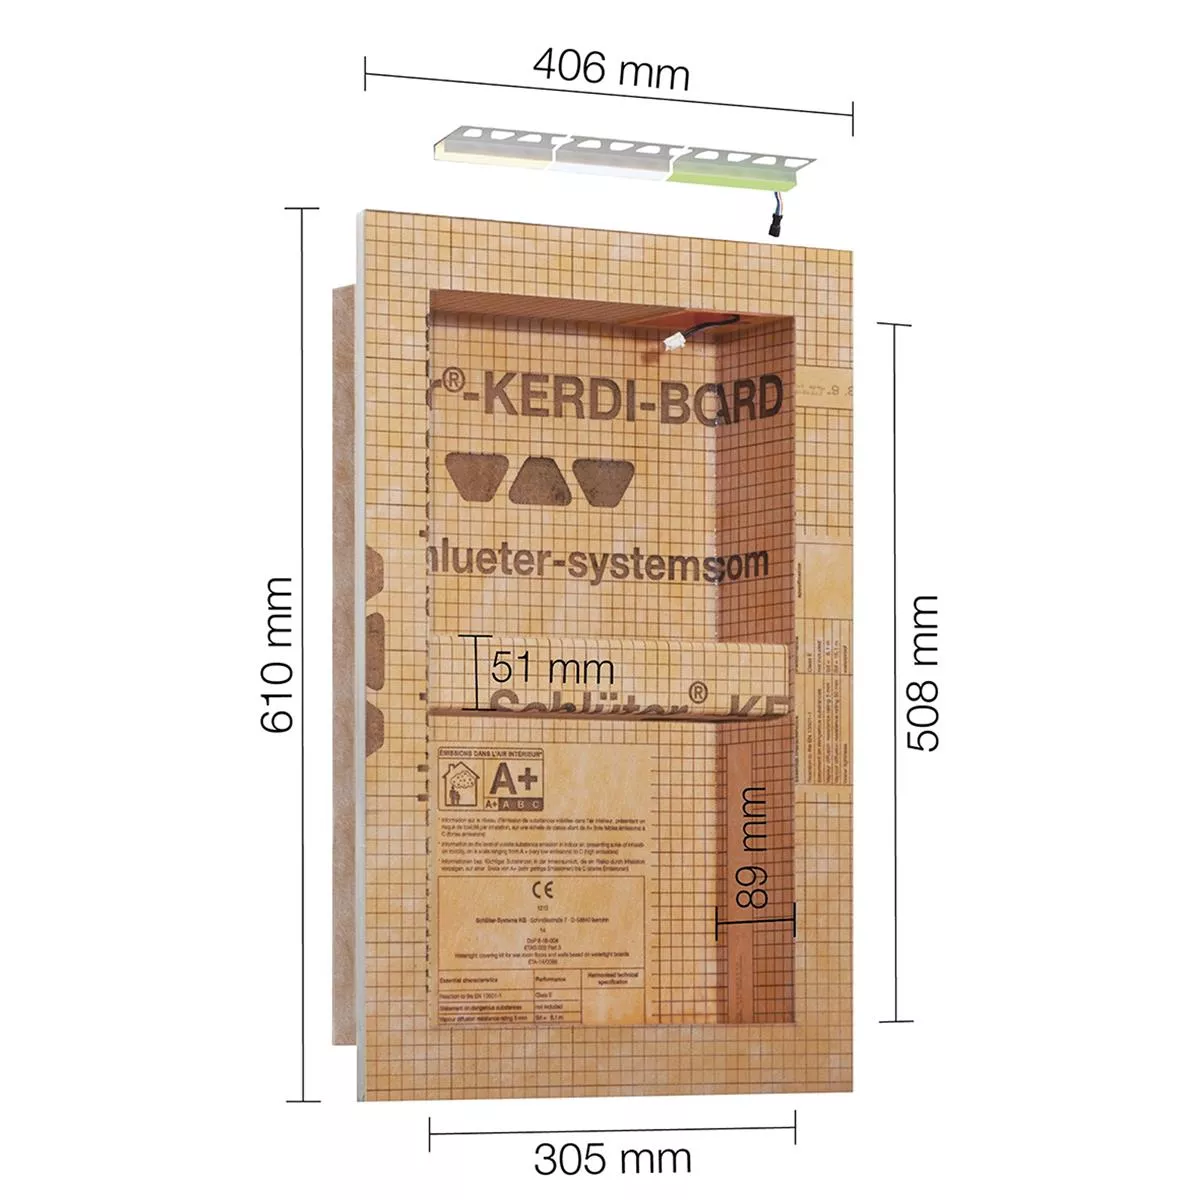 Schlüter Kerdi Board NLT niche készlet LED világítás semleges fehér 30,5x50,8x0,89 cm